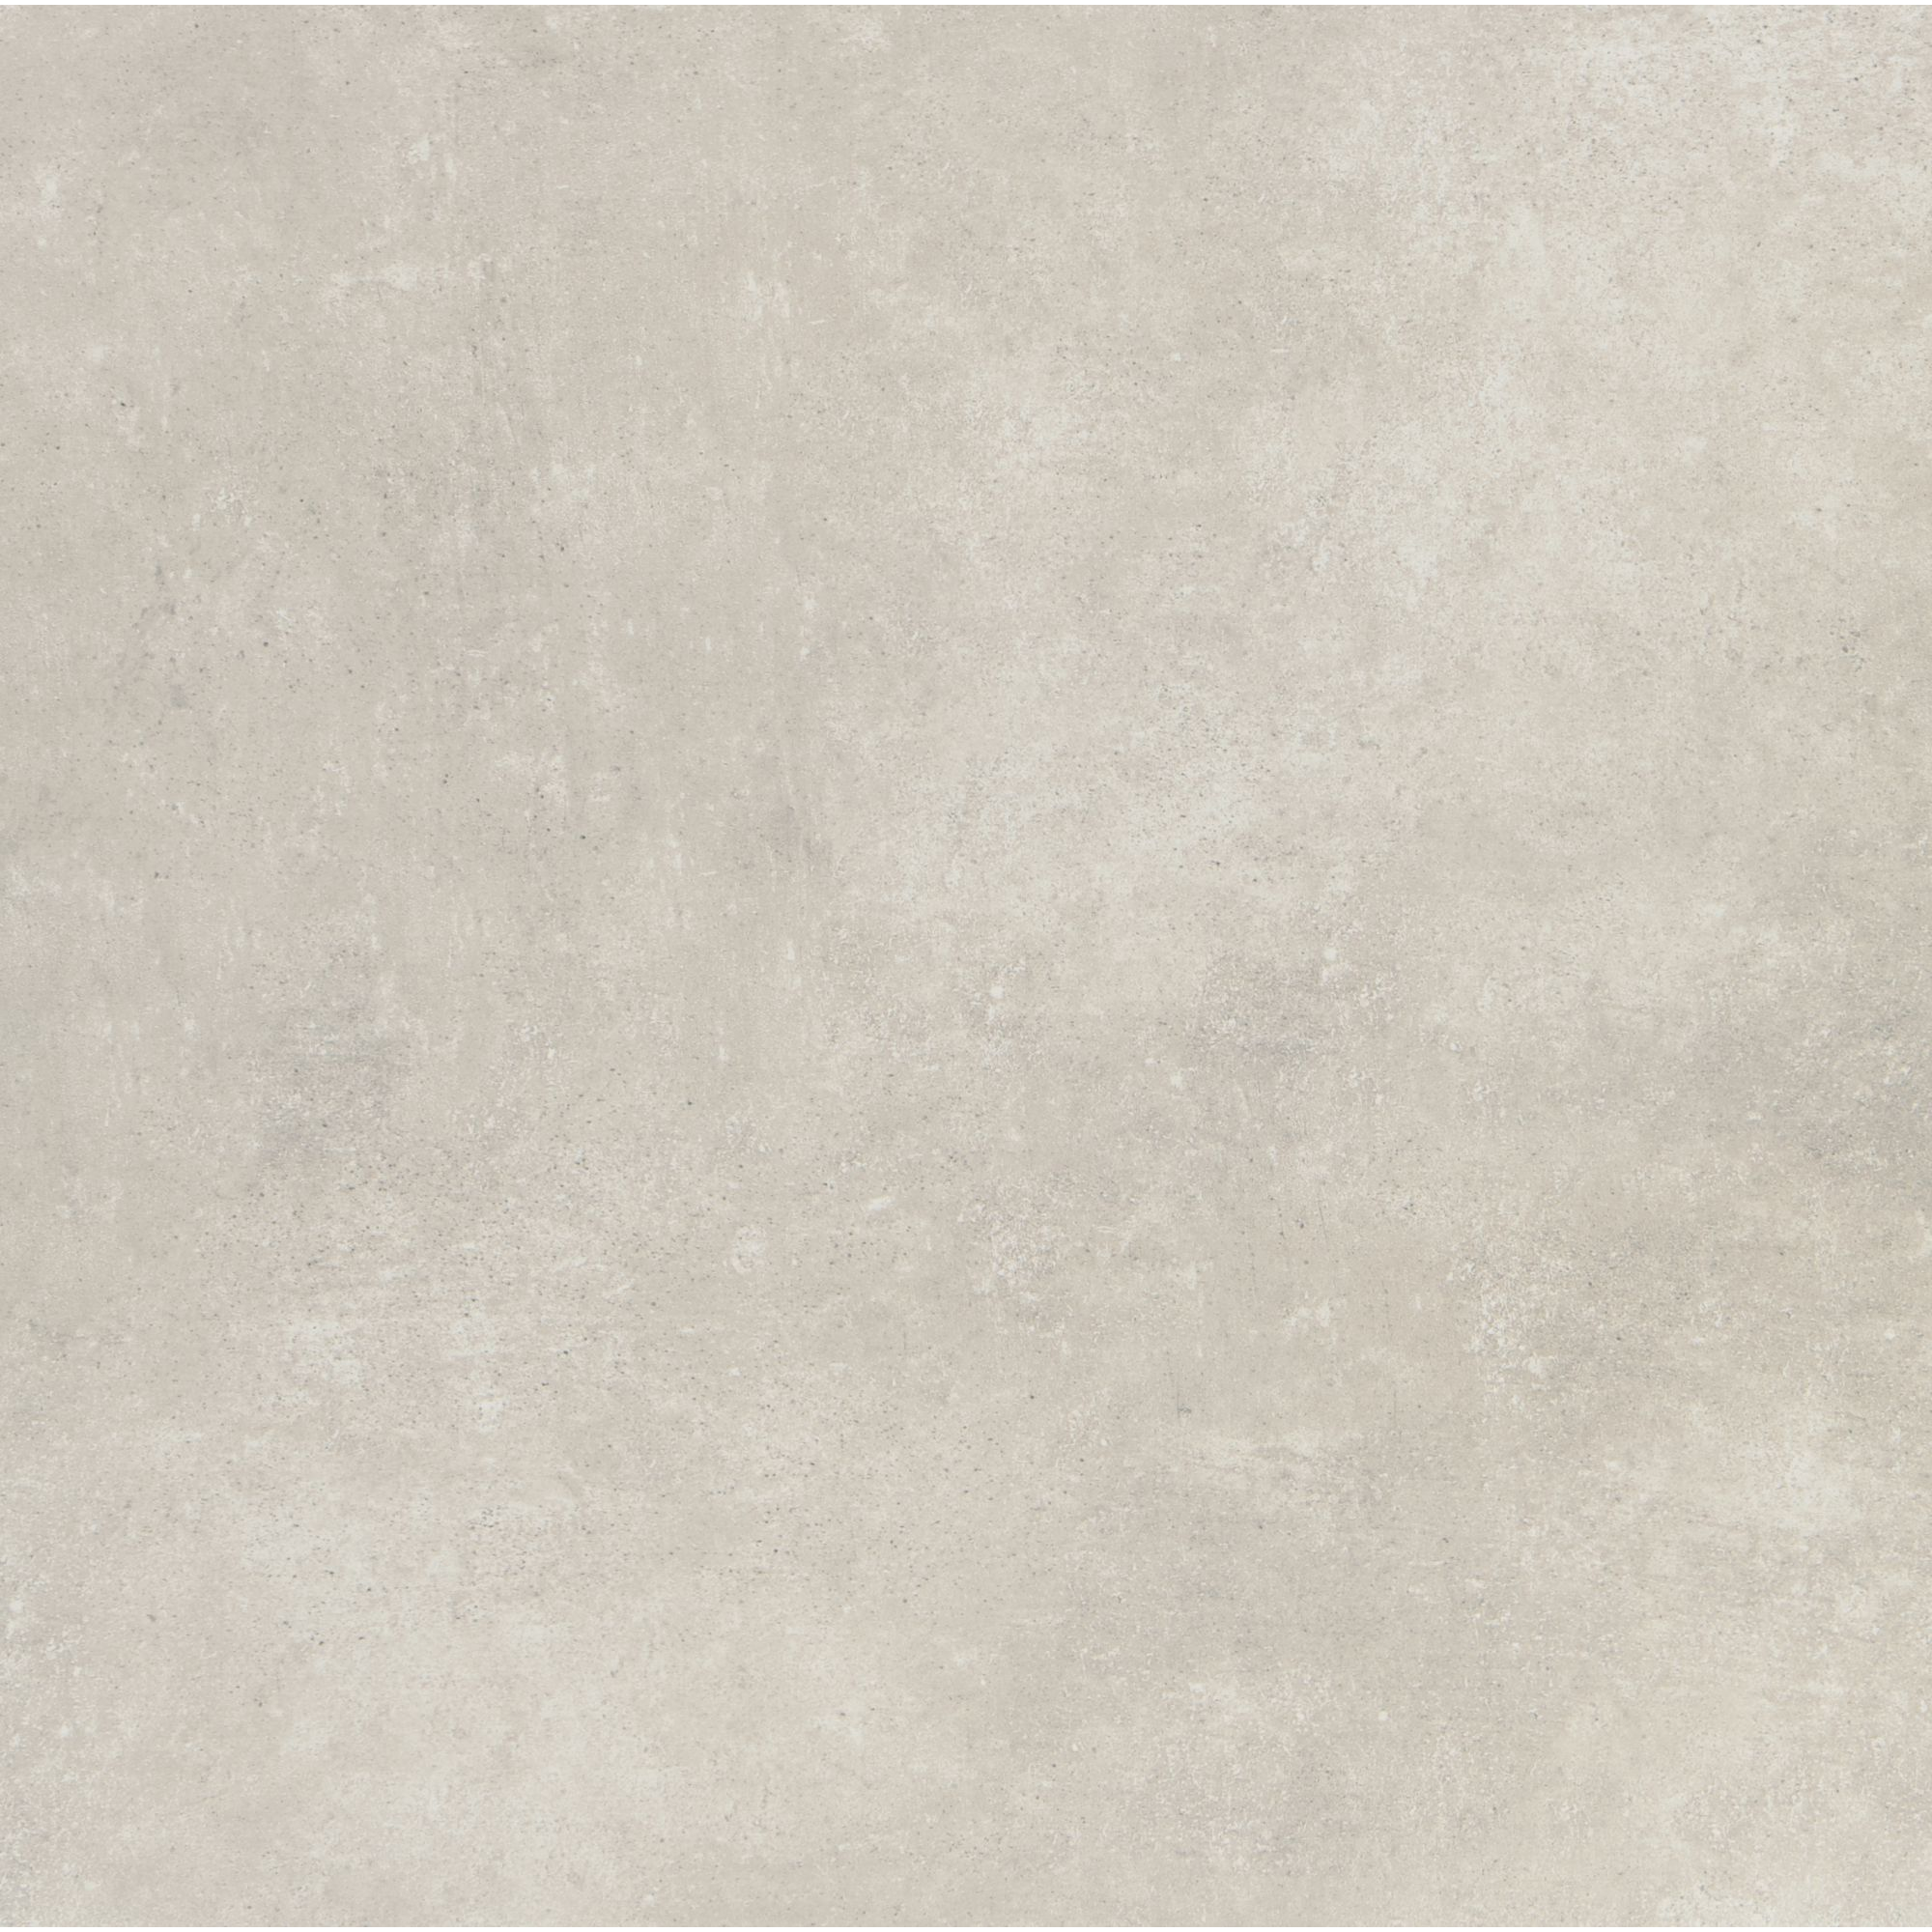 Bodenfliese 'Beton Grigio' Feinsteinzeug 61 x 61 cm grau + product picture